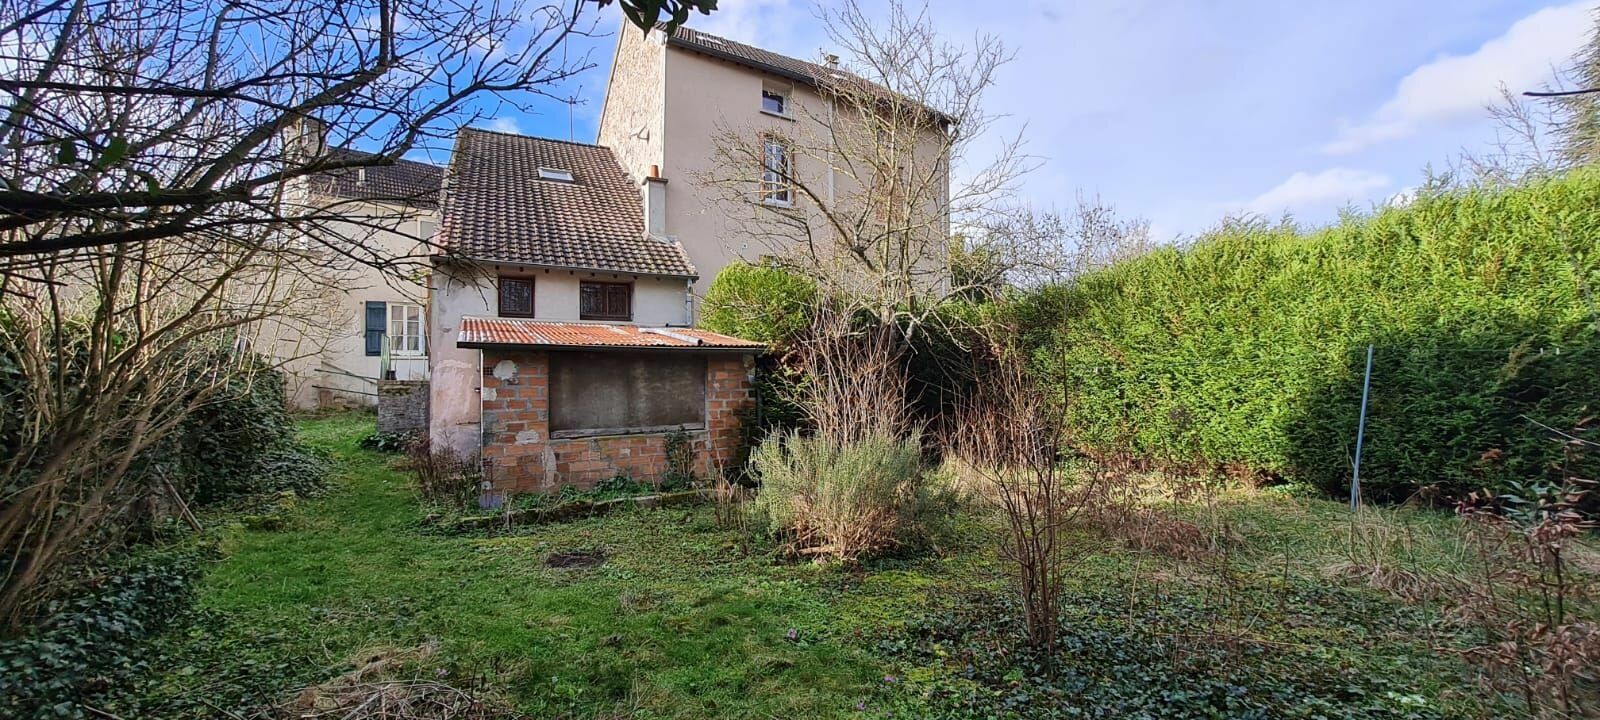 Maison à vendre 2 150m2 à Saâcy-sur-Marne vignette-3